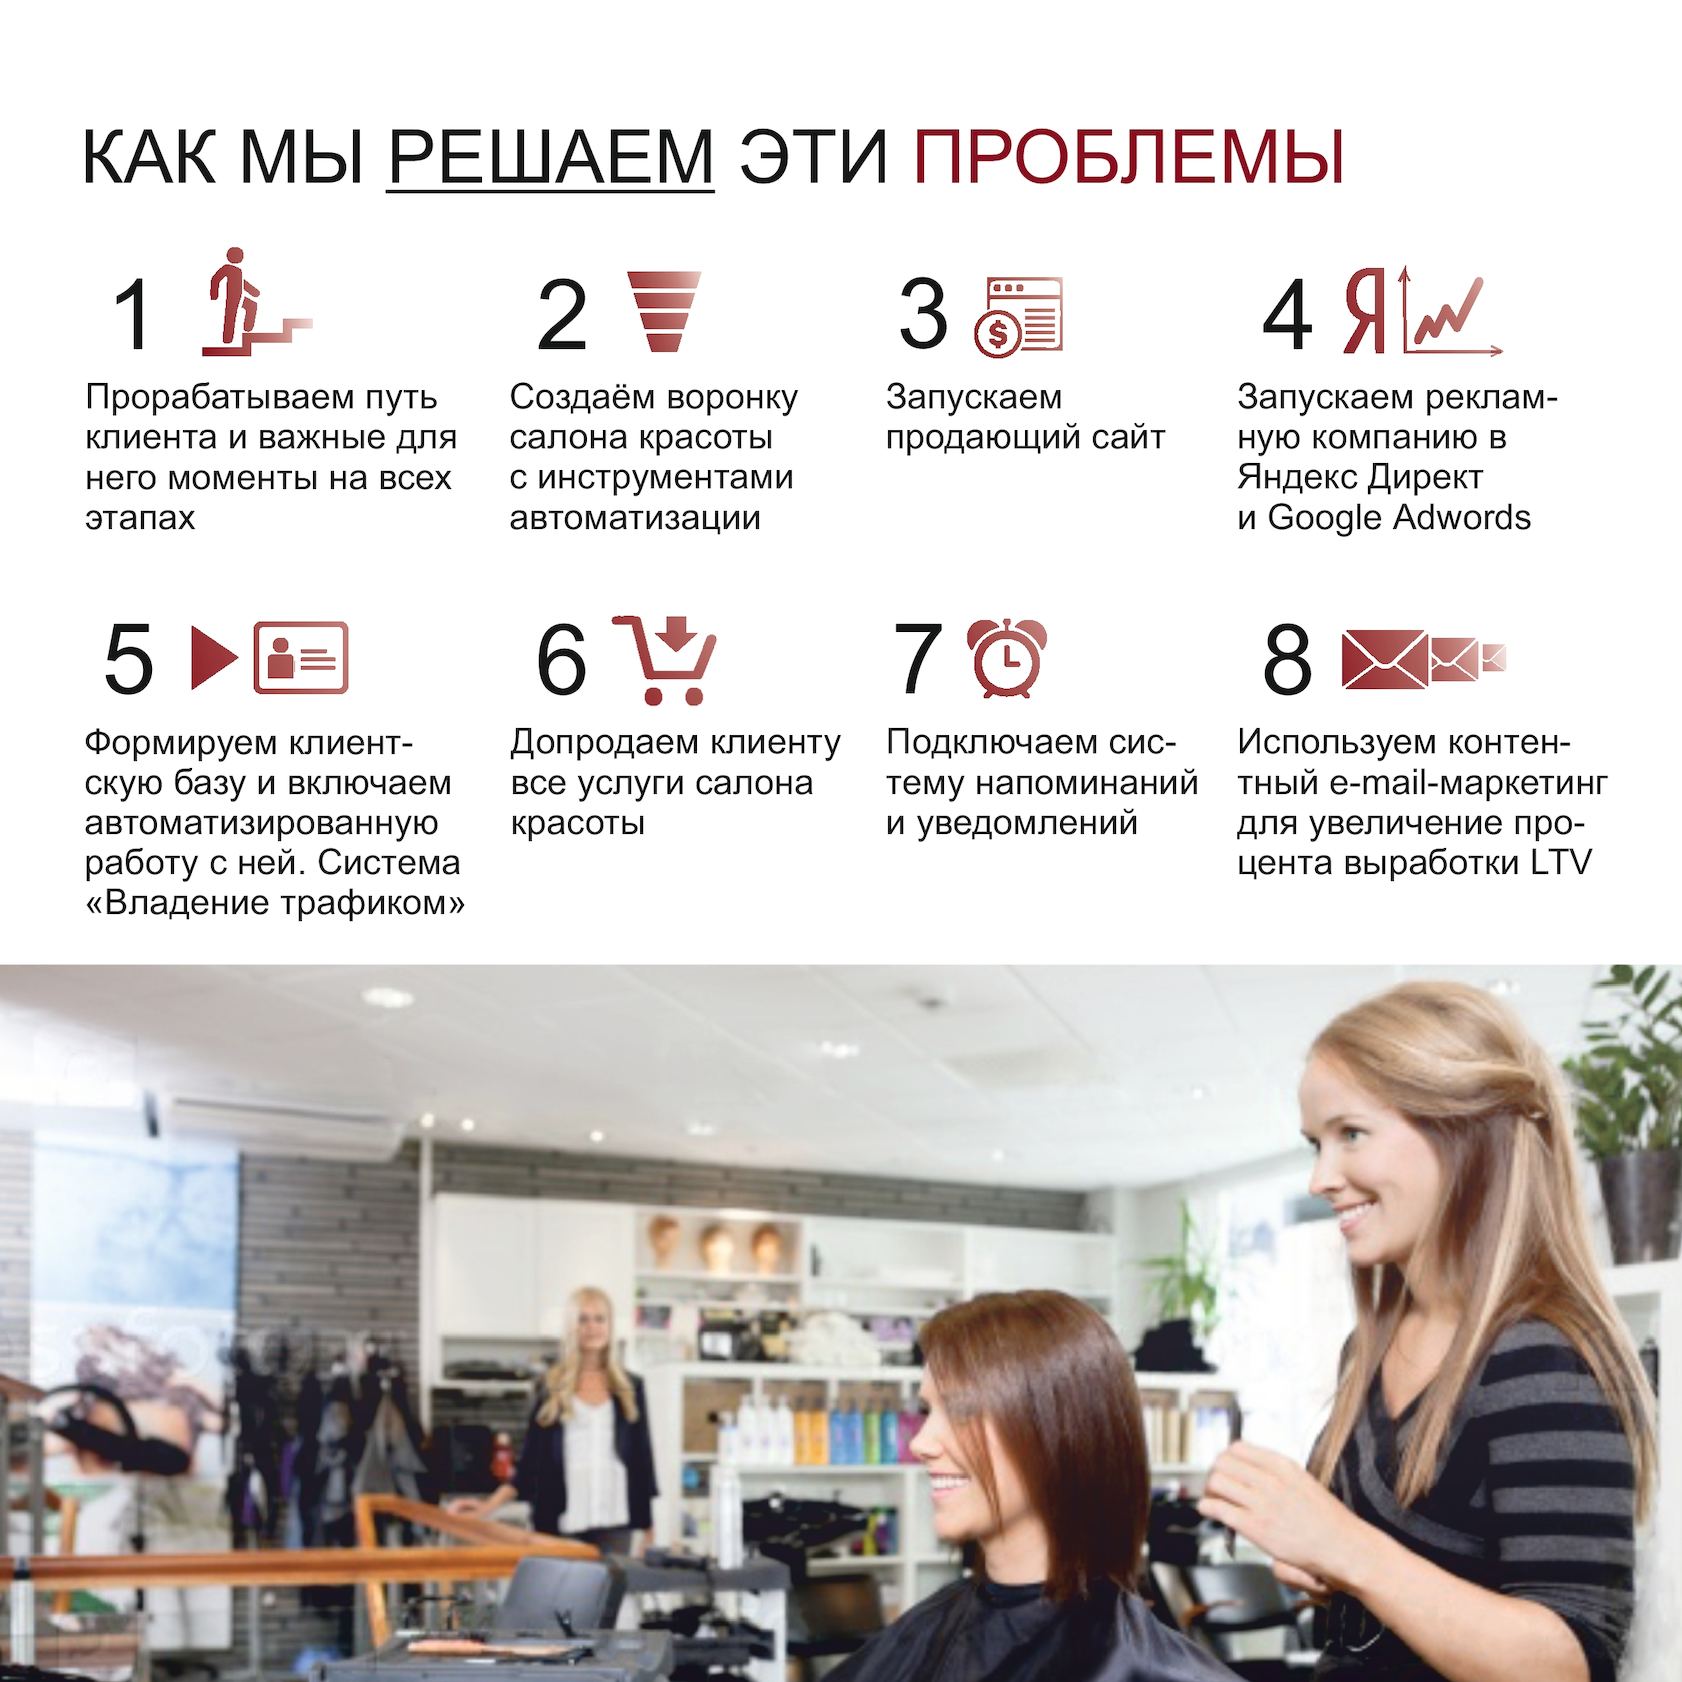 Как составить утп даже для заурядного бизнеса. читайте на cossa.ru